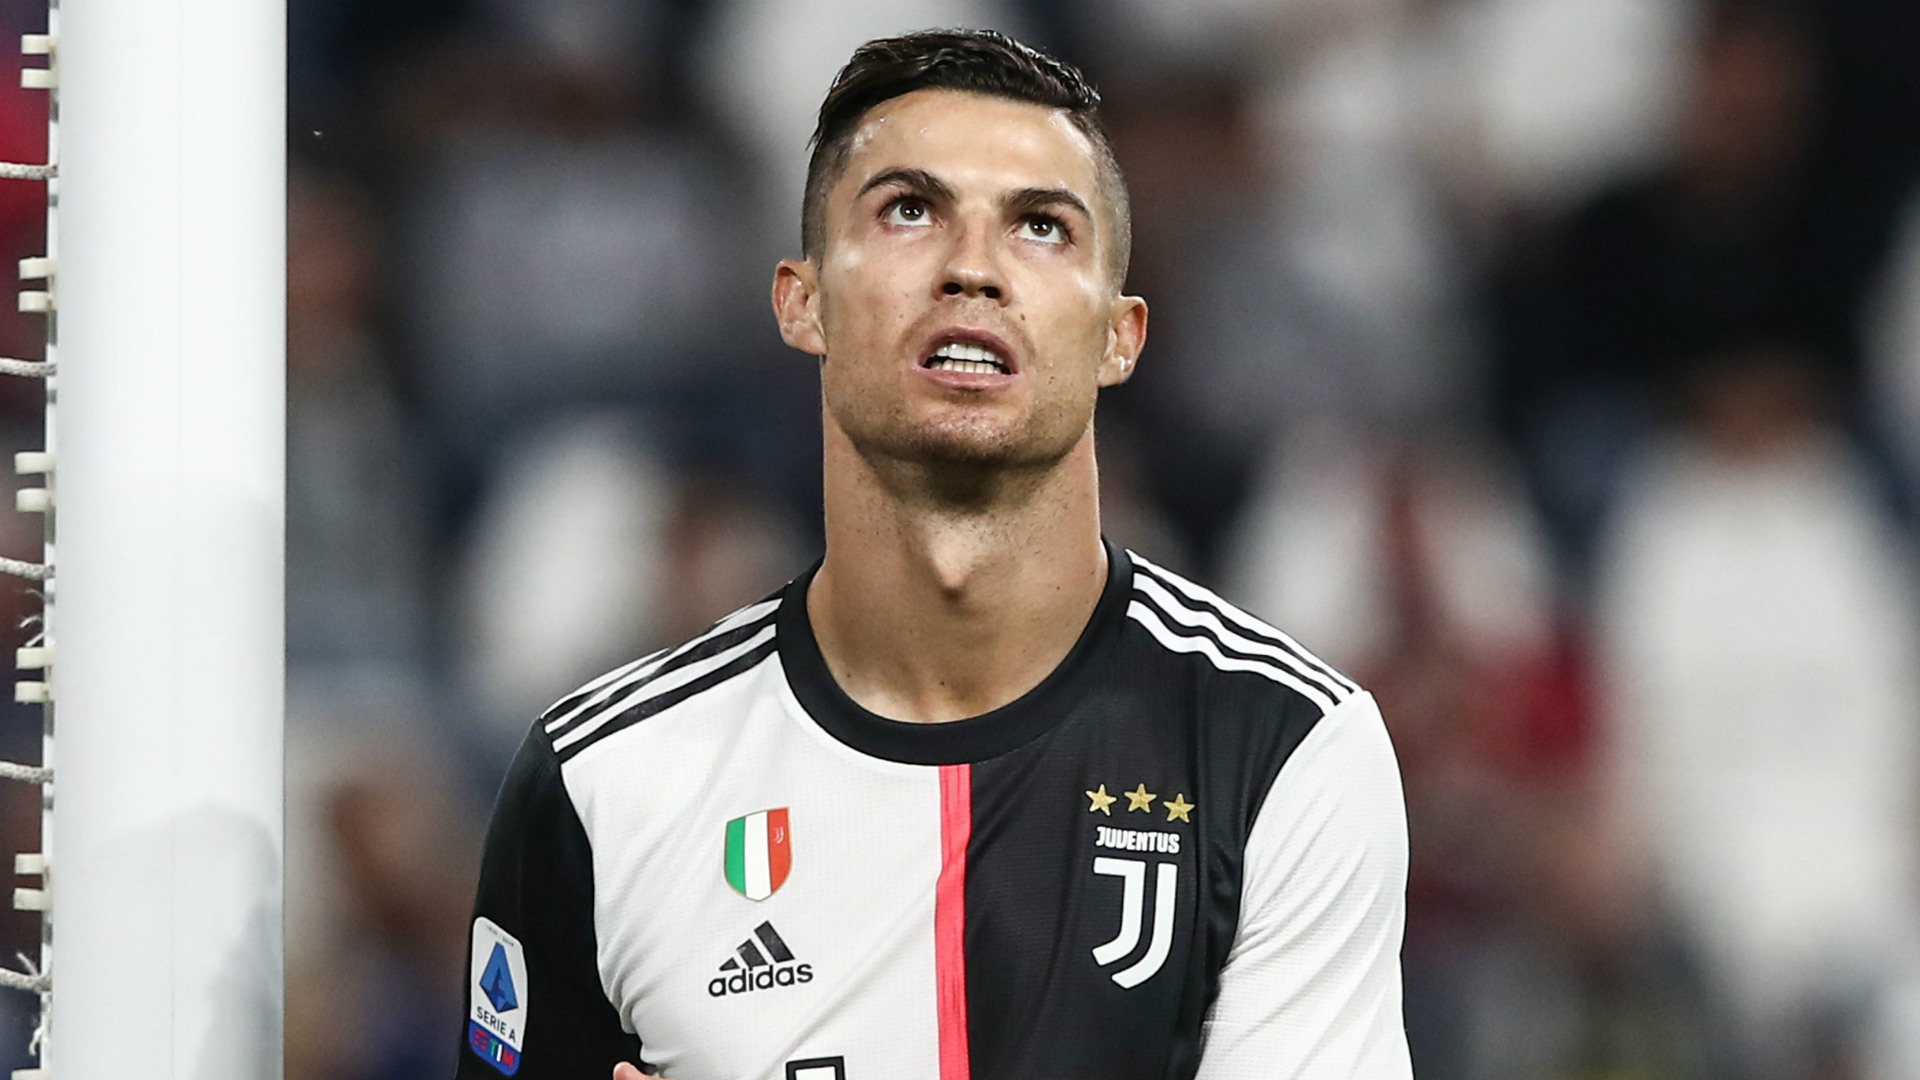 Cristiano Ronaldo a retardé l’arrivée des récompenses de Serie A jusqu’à ce qu’il soit confirmé comme MVP